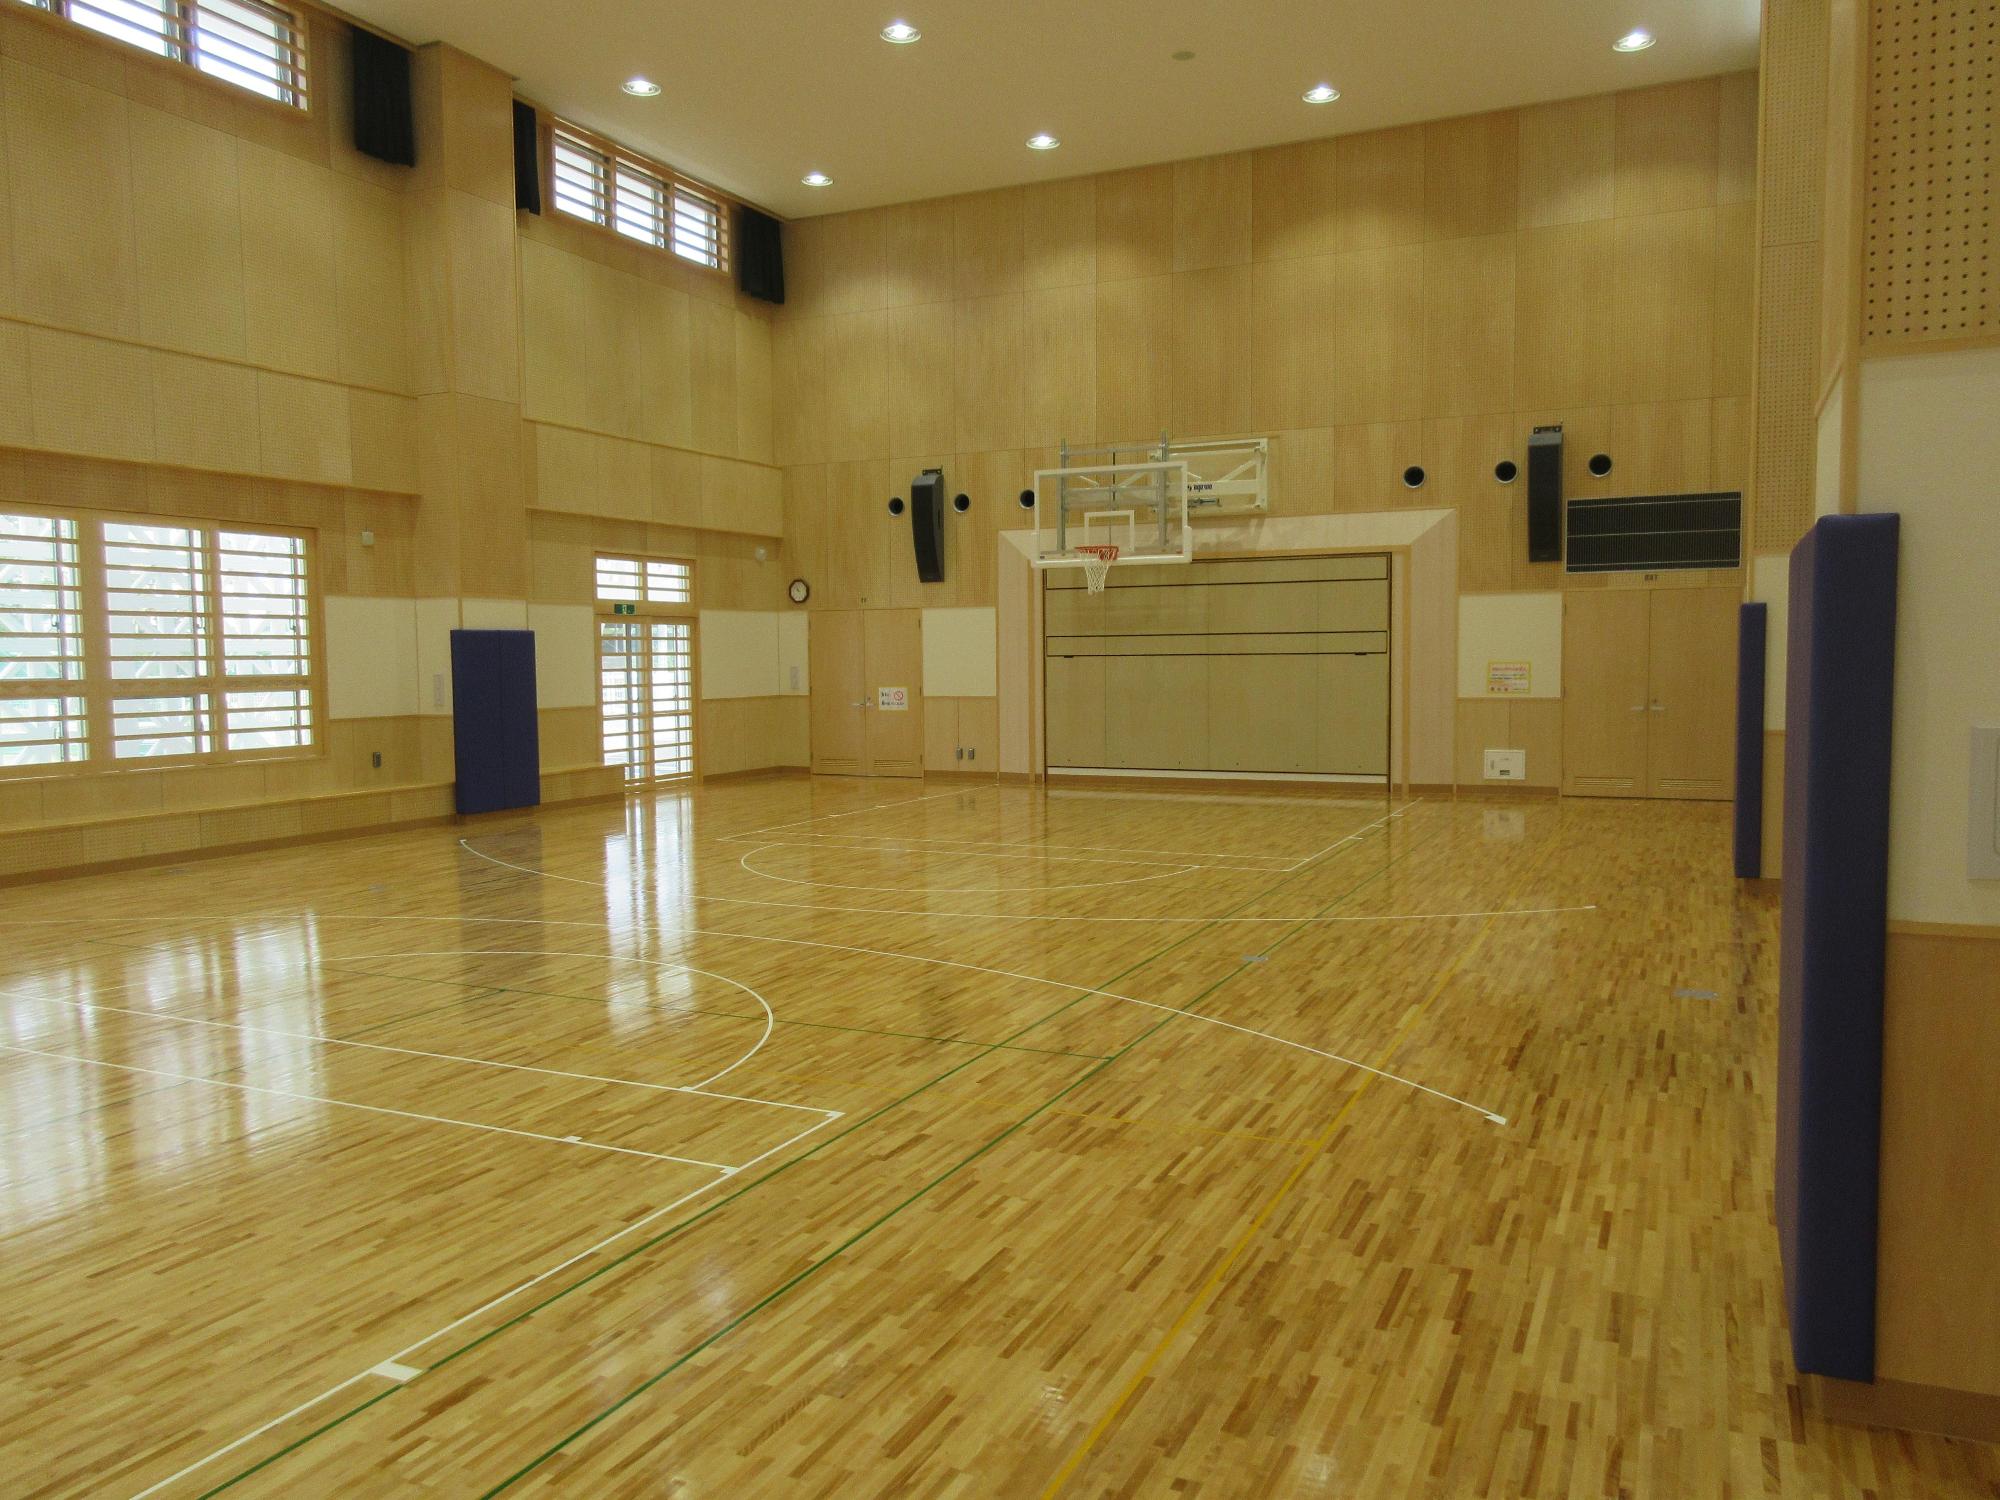 バスケットゴールがあり、床には様々な競技用の白と緑のラインが引かれてある体育館内の写真